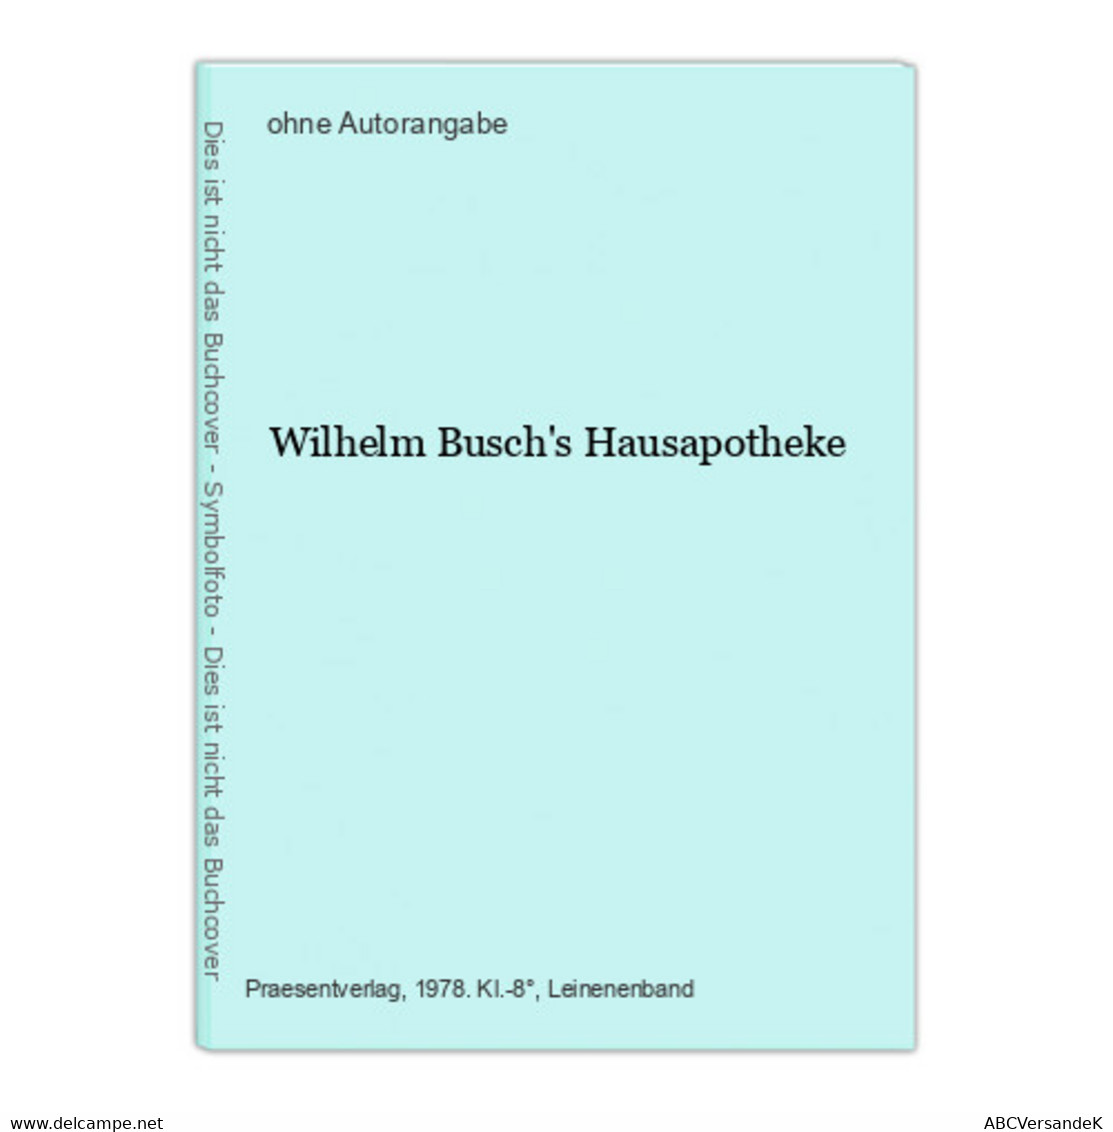 Wilhelm Busch's Hausapotheke - Philosophy